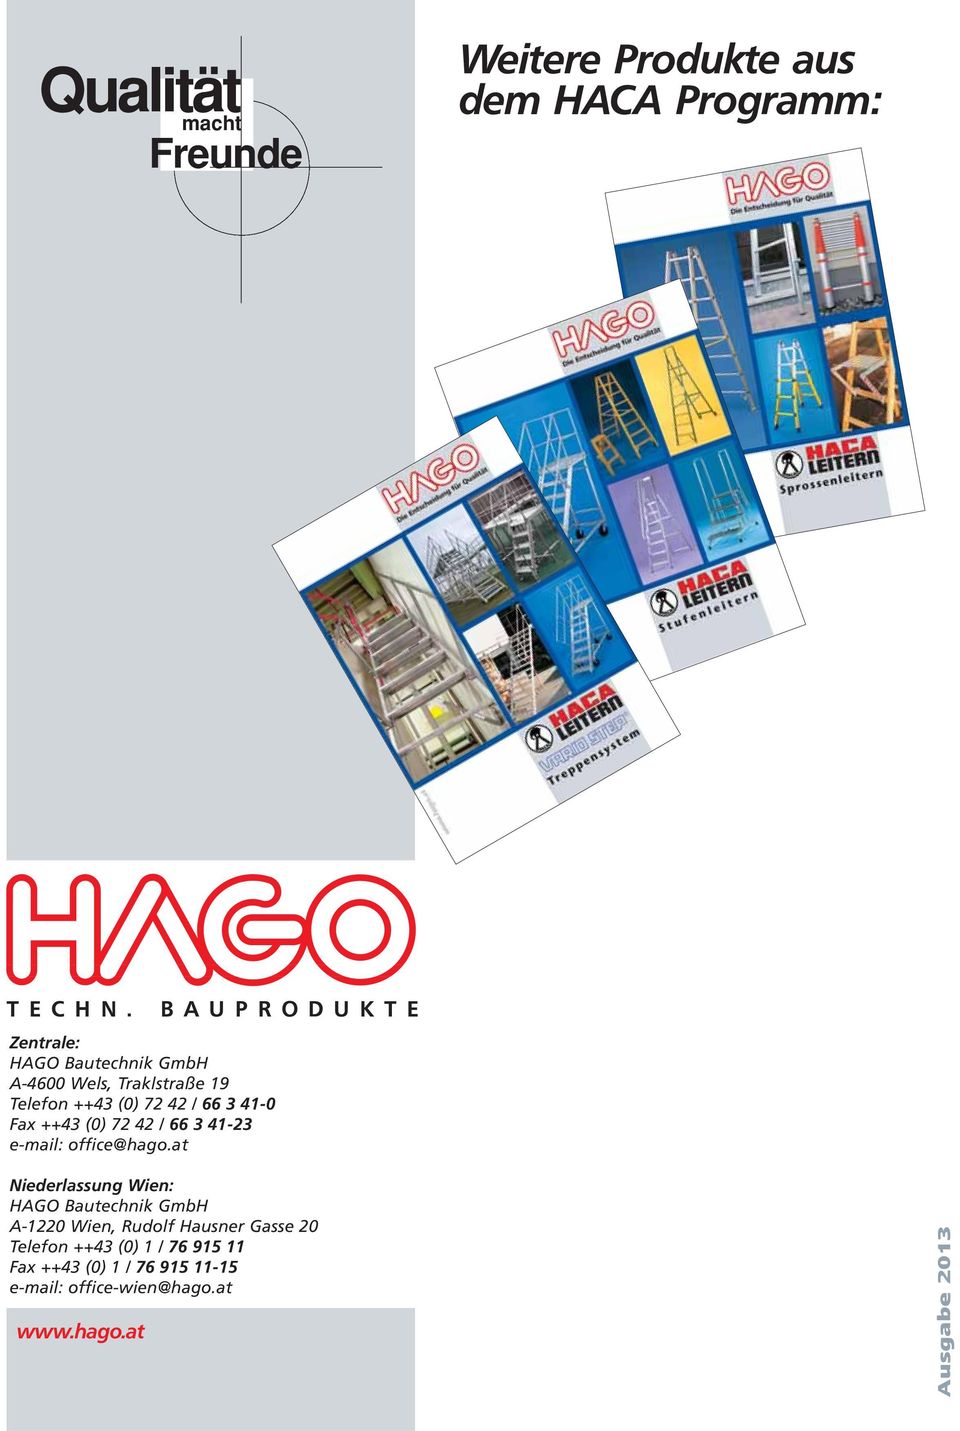 (0) 72 42 / 66 3 41-0 Fax ++43 (0) 72 42 / 66 3 41-23 Fax ++43 (0) 72 42 / 66 3 41-23 e-mail: office@hago.at e-mail: office@hago.